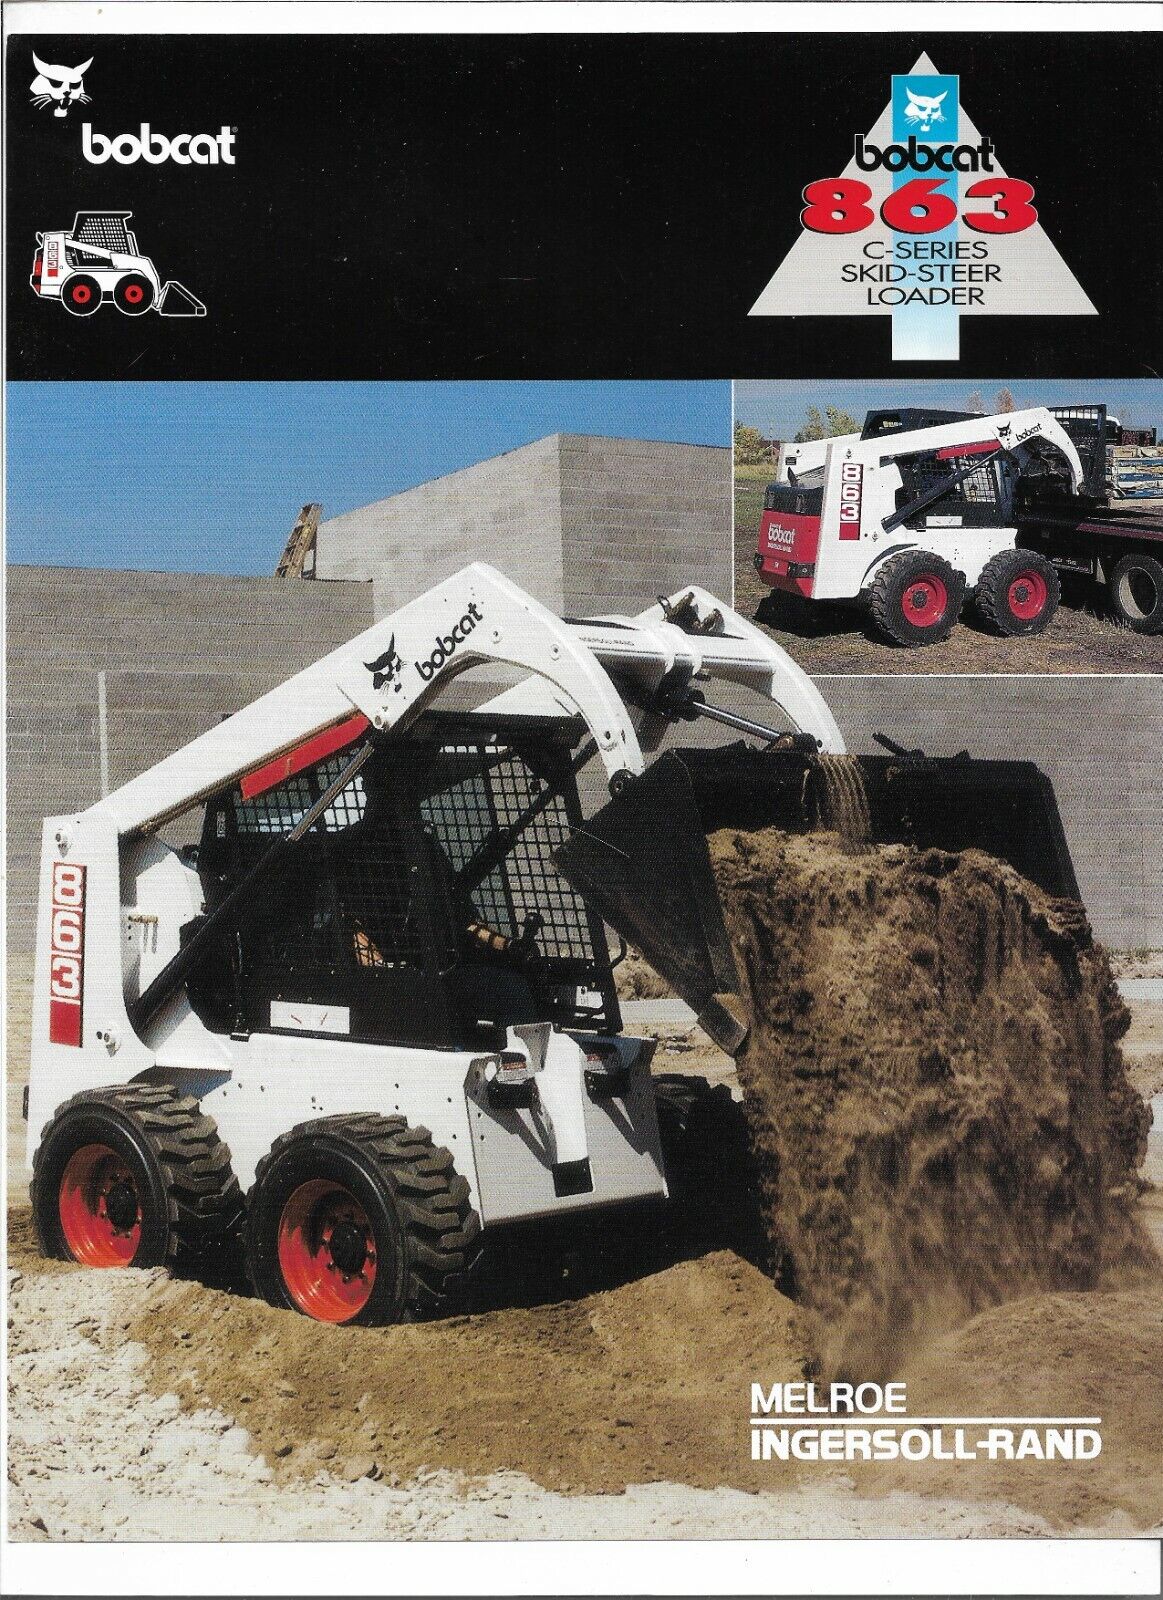 Original OE OEM Bobcat 863 C Series Skid Steer Loader Sales Brochure Spec Sheet